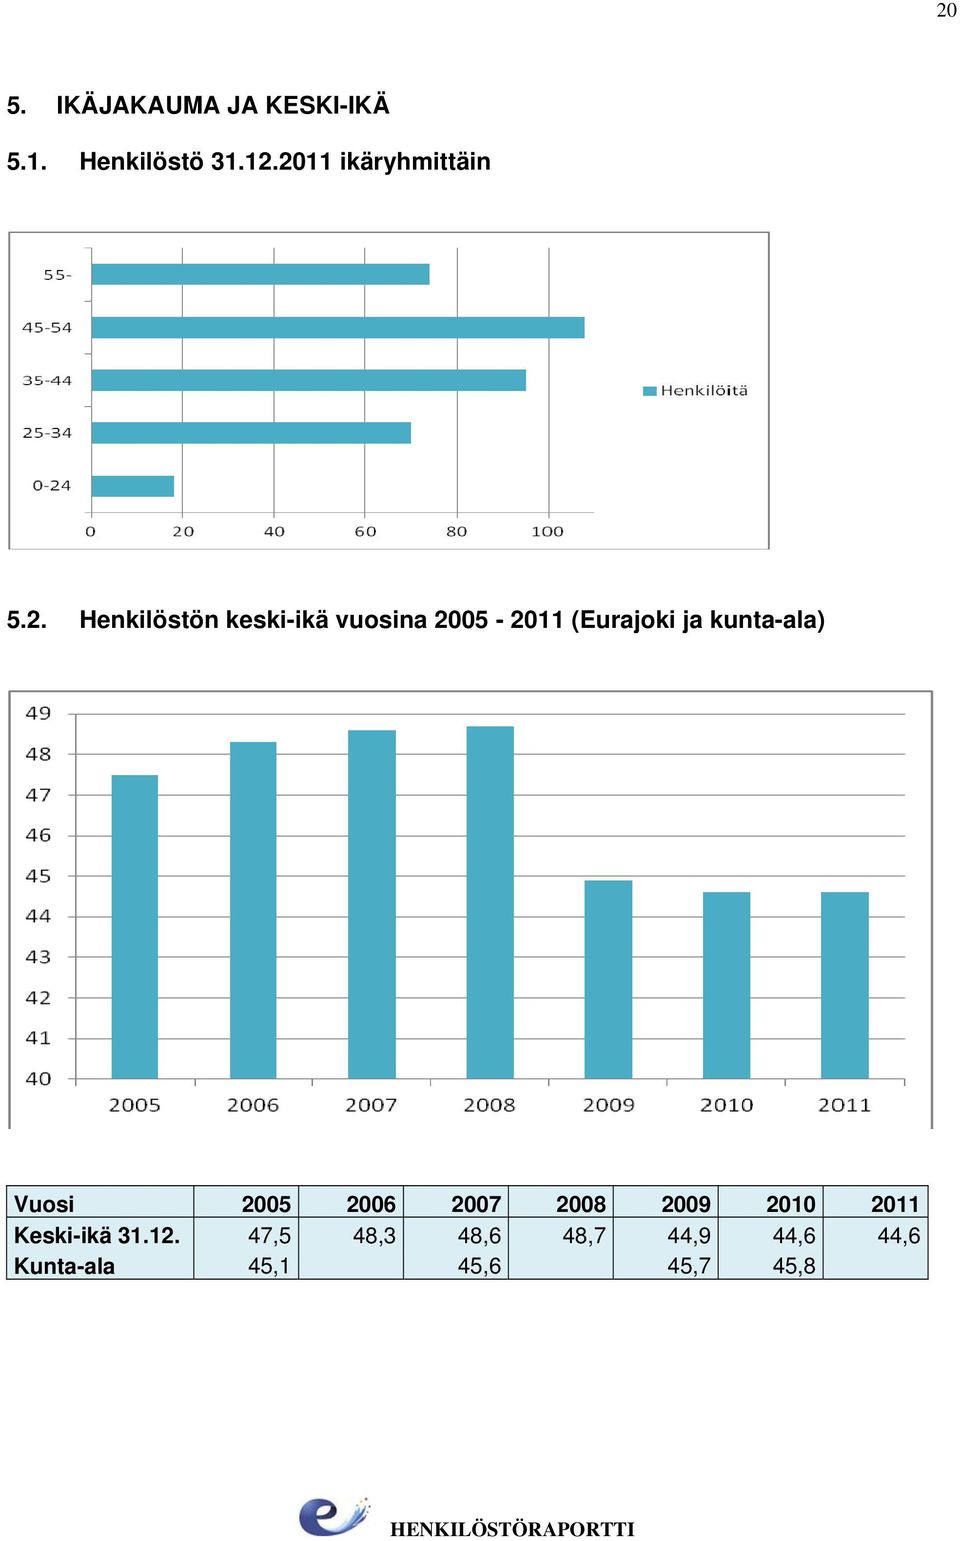 (Eurajoki ja kunta-ala) Vuosi 2005 2006 2007 2008 2009 2010 2011